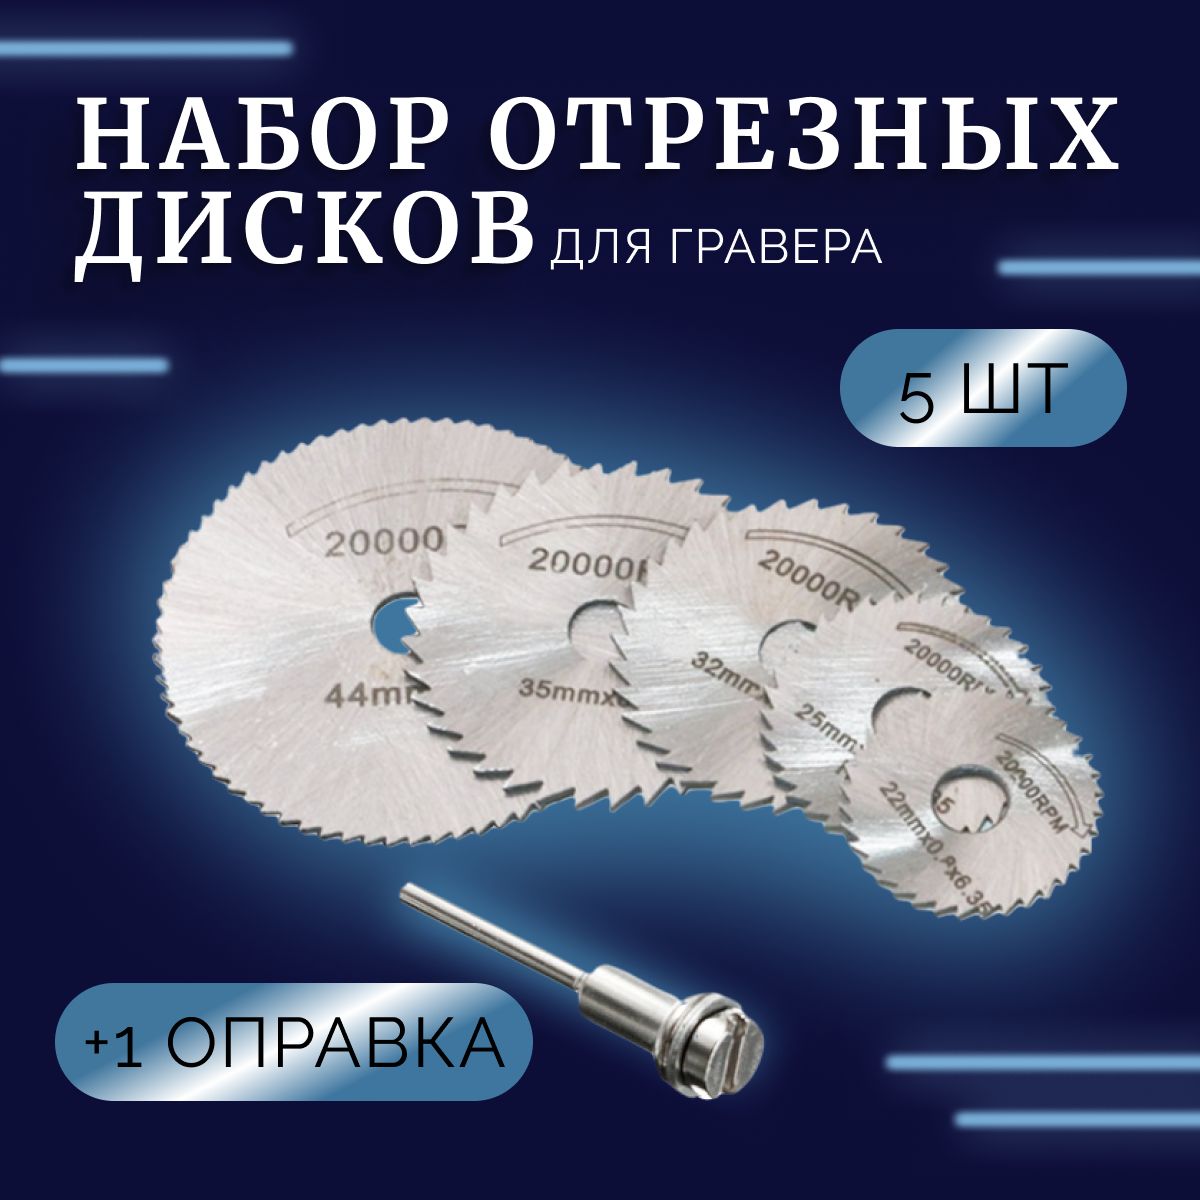 ᐉ Диски для граверов и миниболгарок - elit-doors-msk.ru